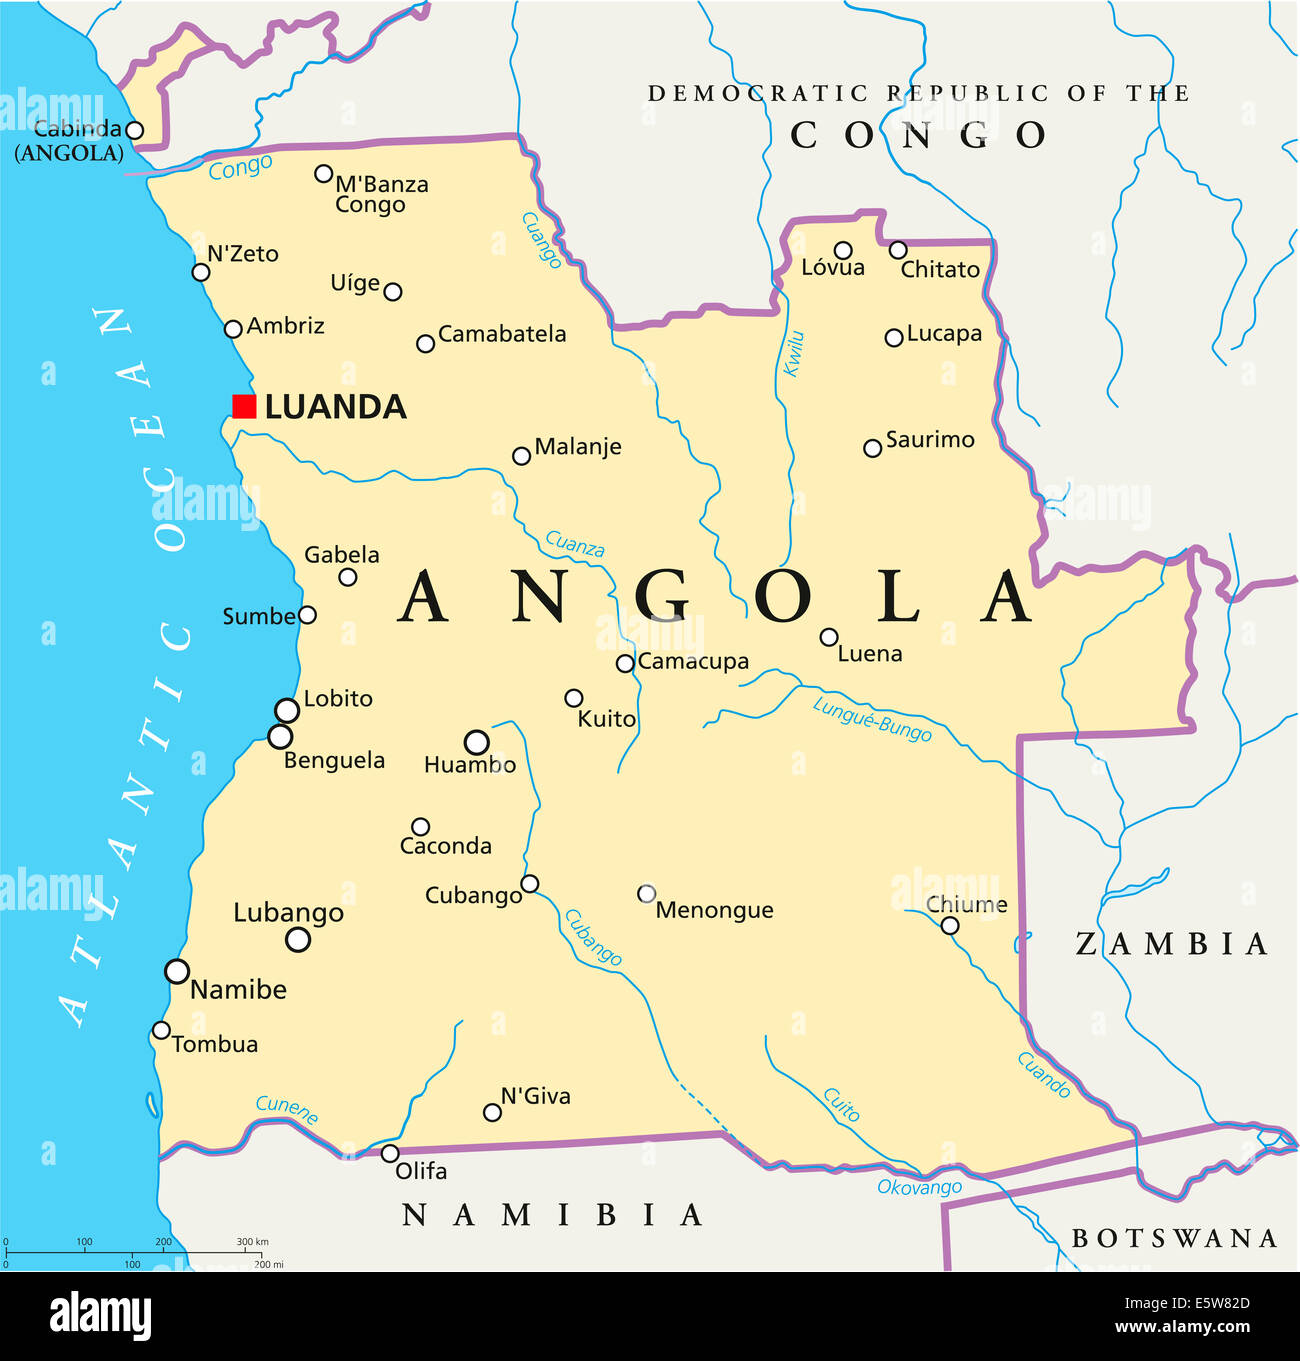 Angola Mapa Político Con Capital Luanda Con Las Fronteras Nacionales La Mayoría De Las 2056